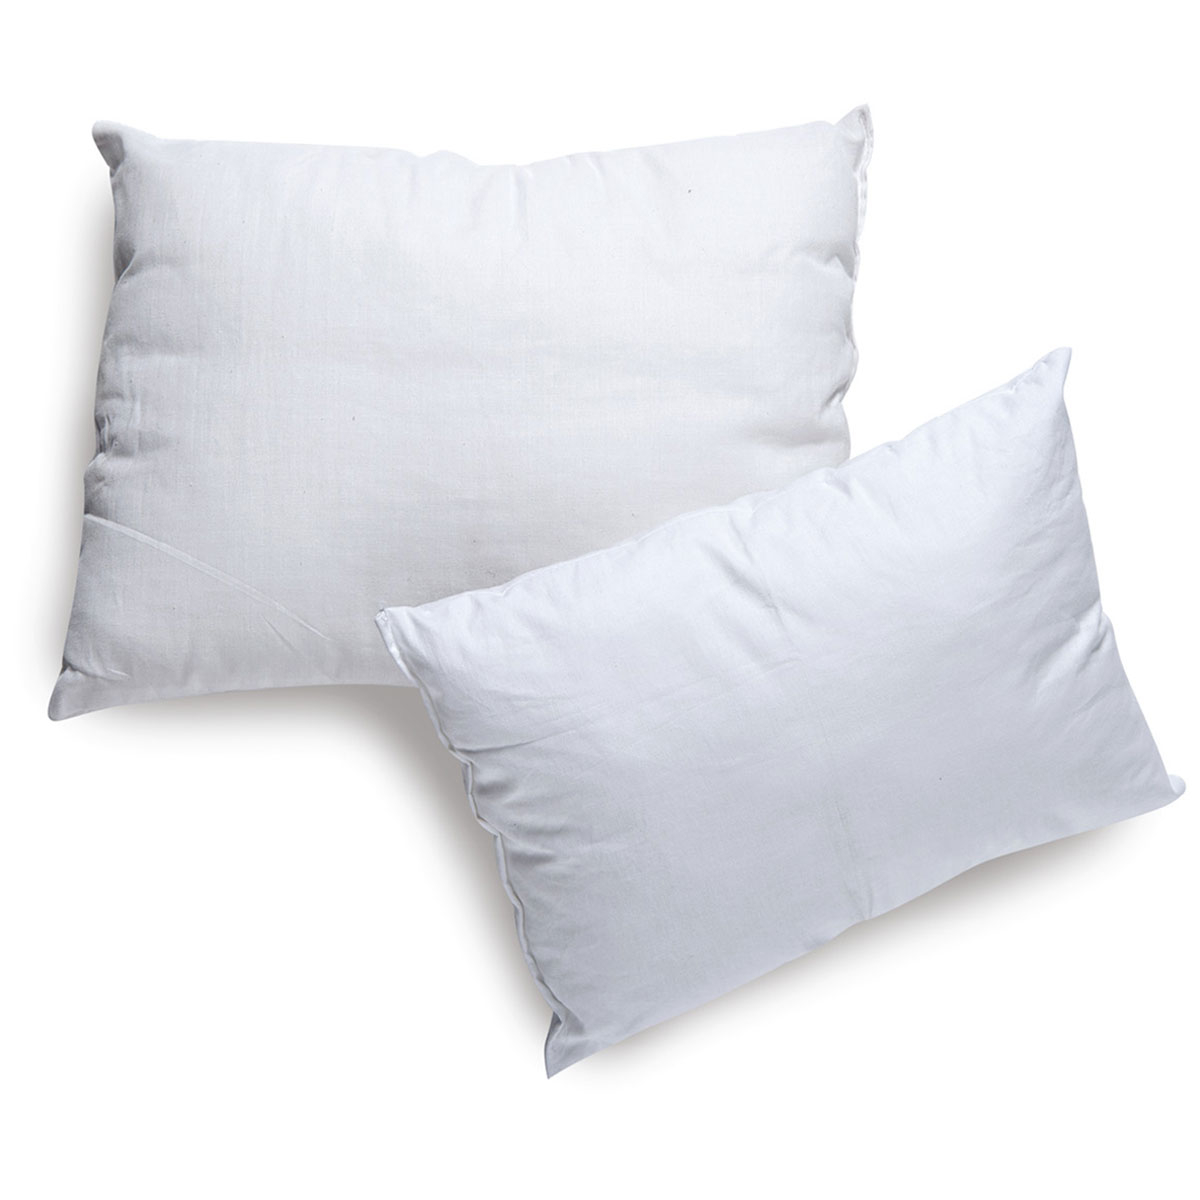 Βρεφικό Μαξιλάρι Ύπνου Sb Home Baby Pillow 205246